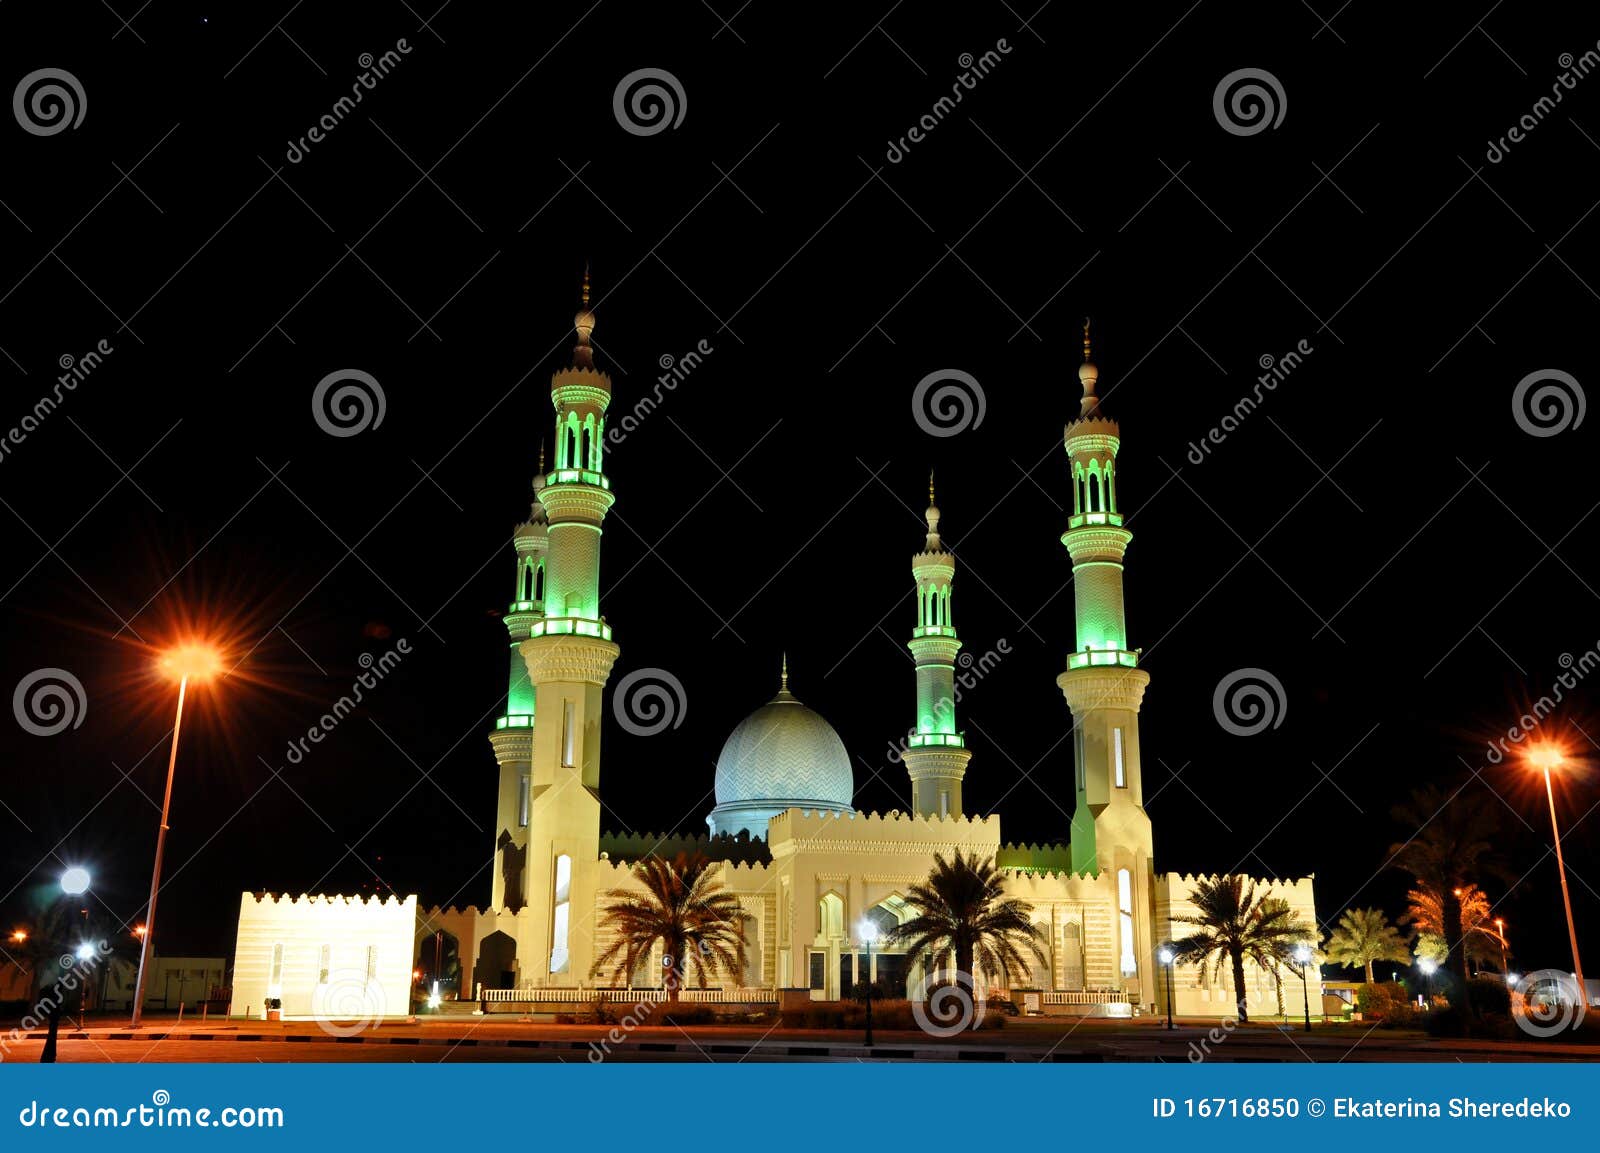 mosque in night in united arab emirates